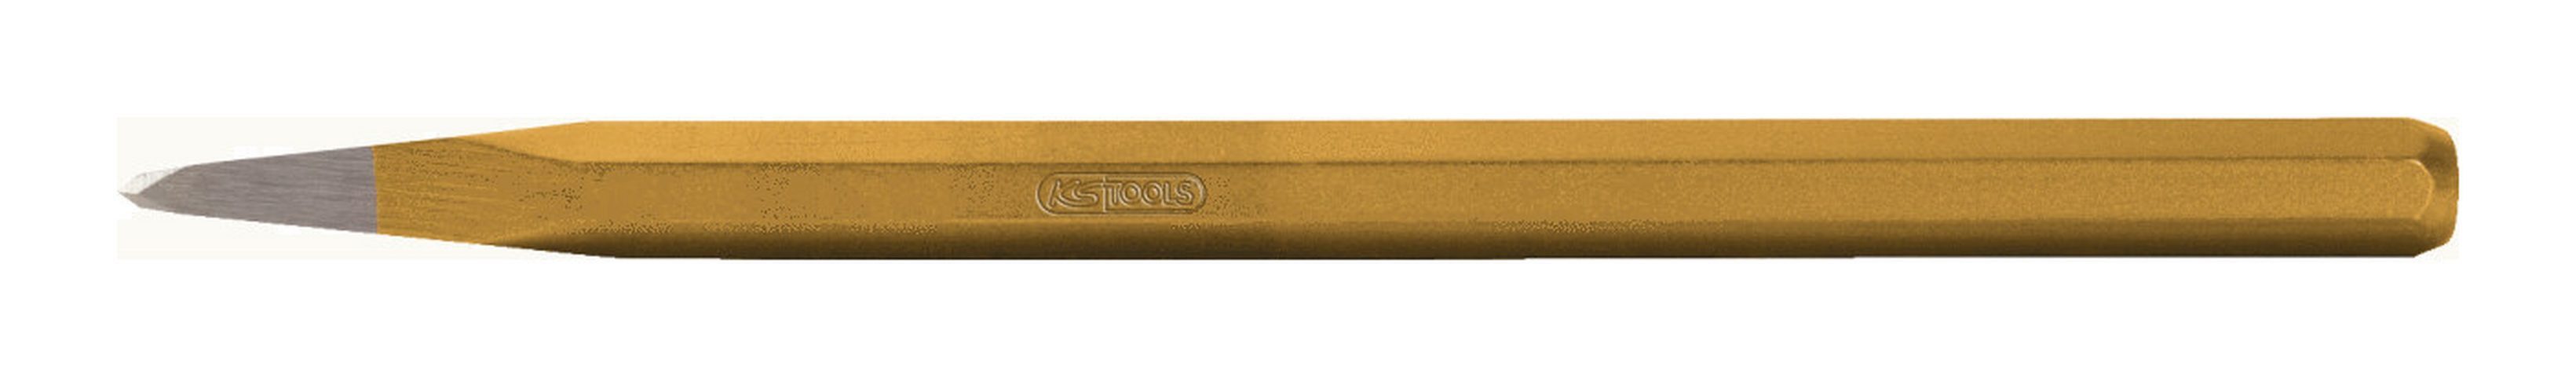 KS Tools Spitzmeißel, 350 in mm, 8-kant, 18 x